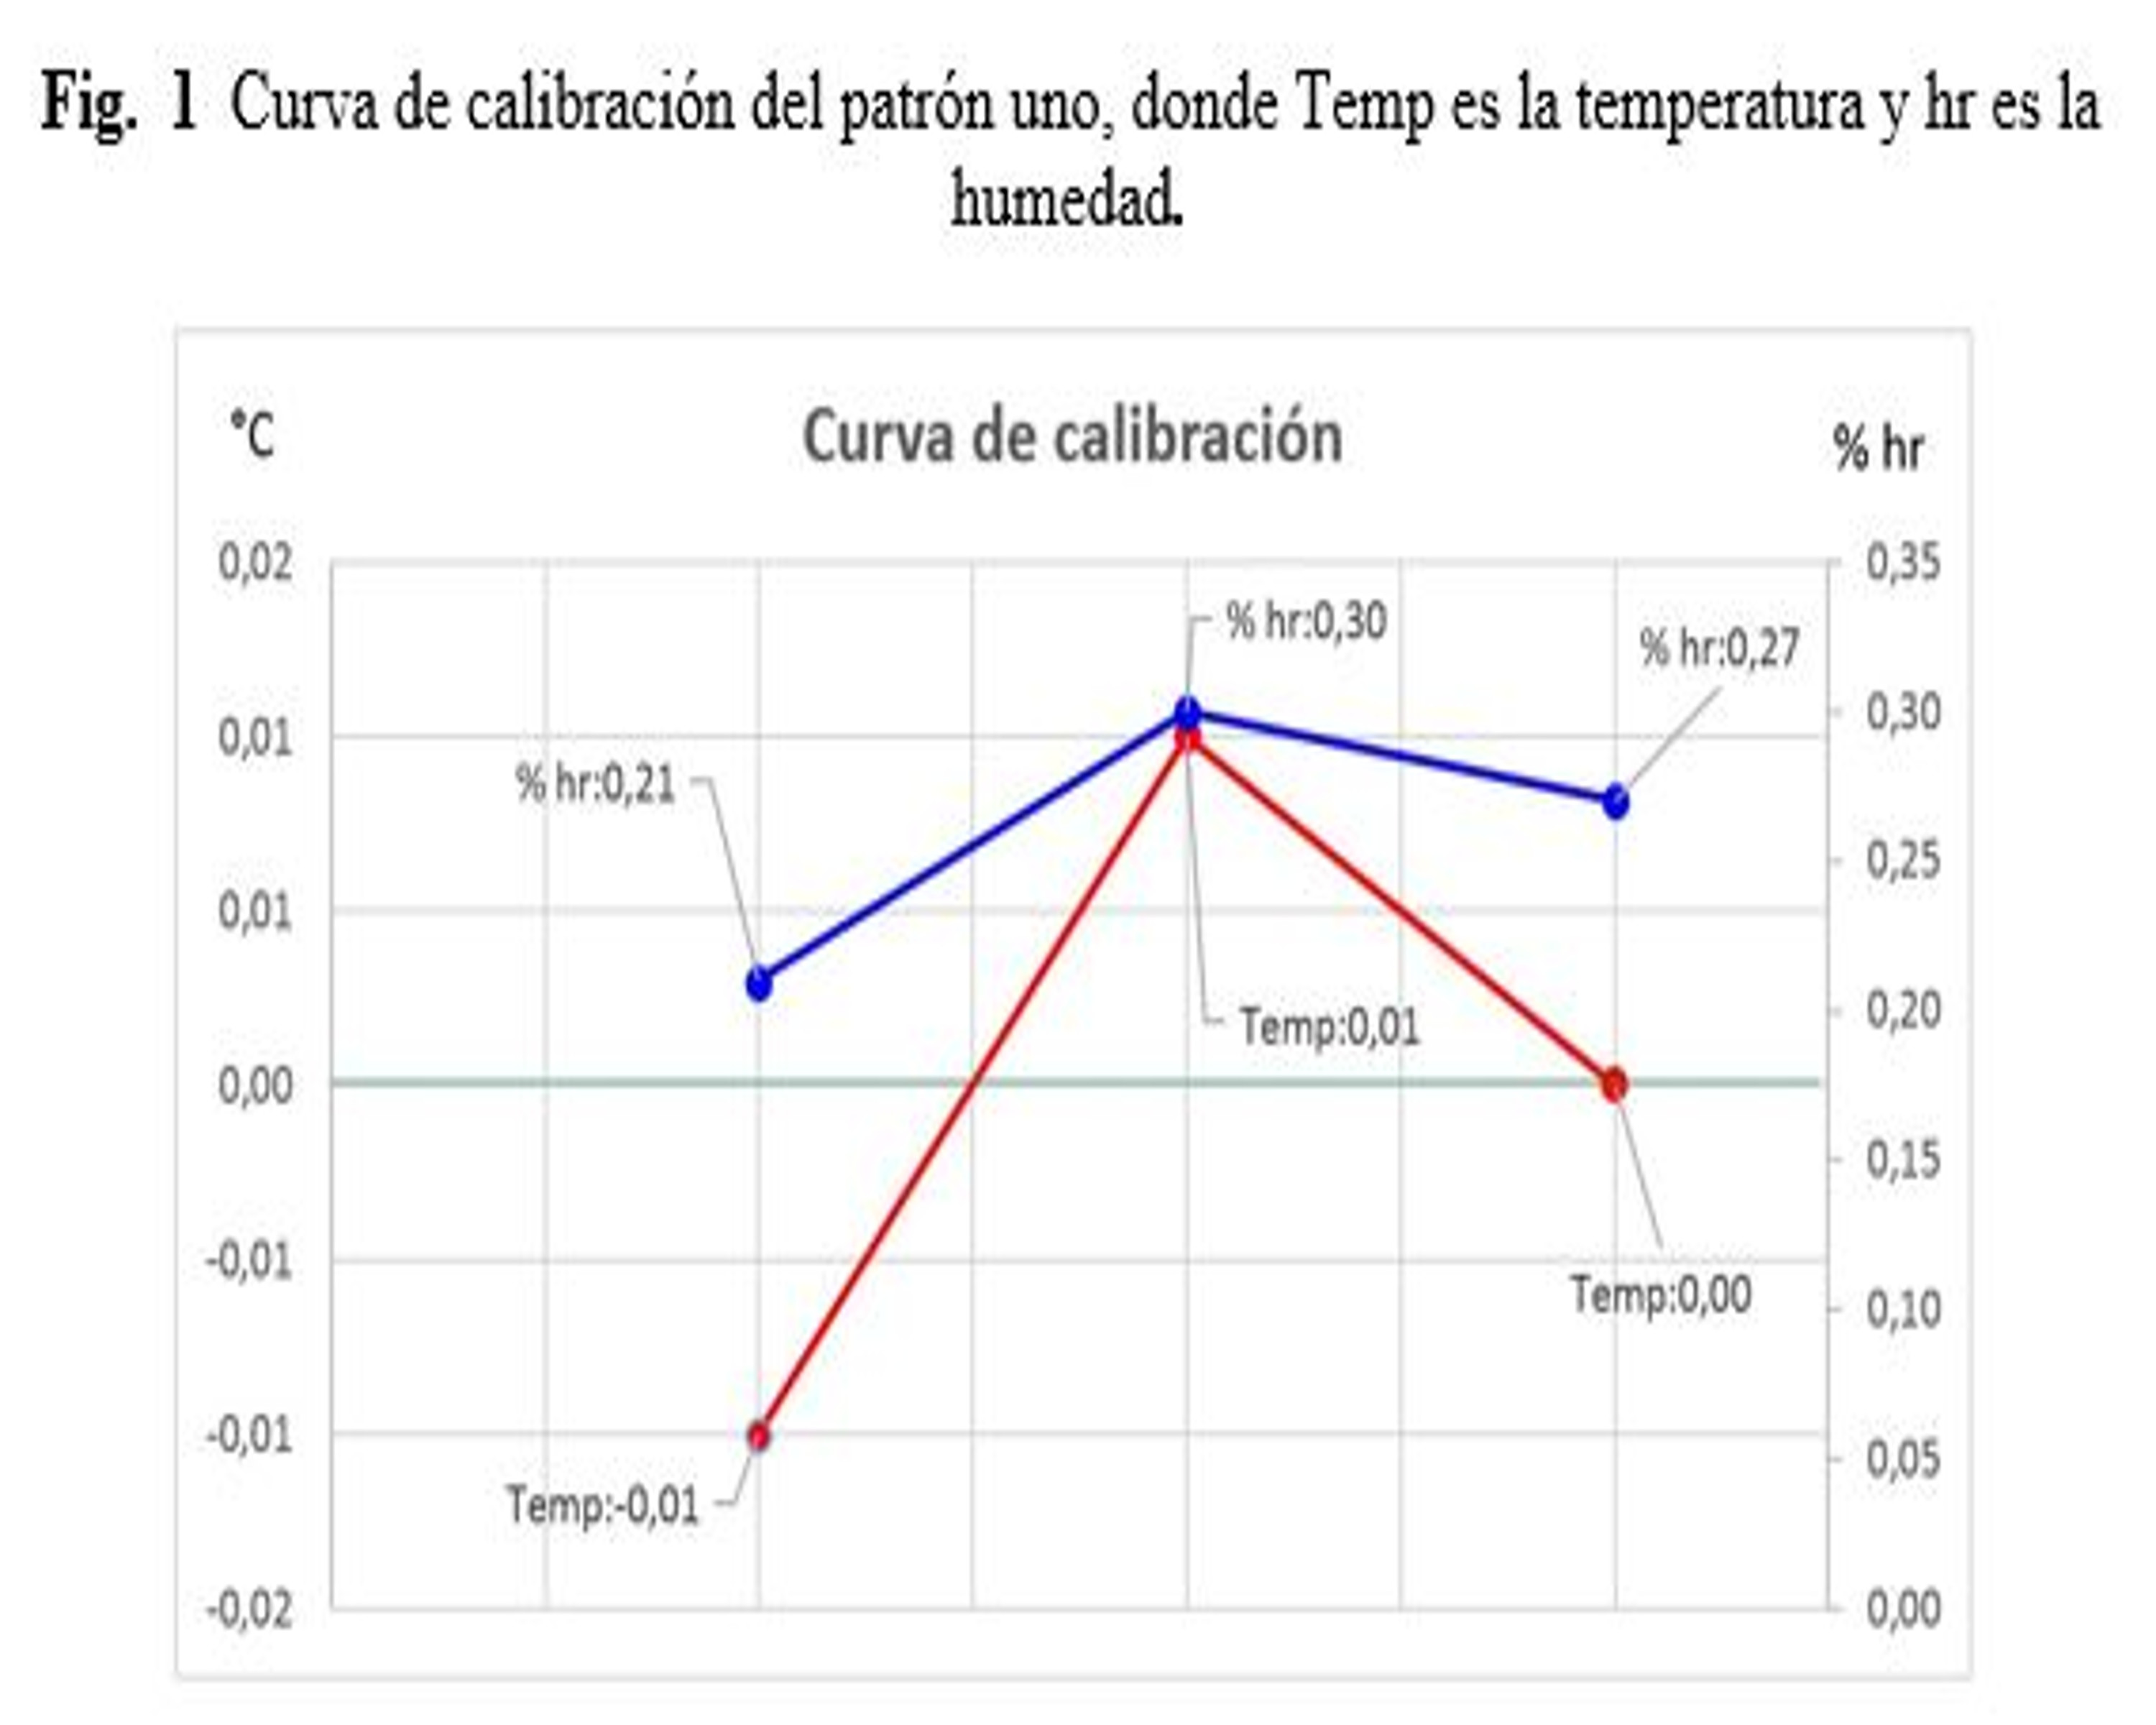 Curva de calibración del patrón uno, donde Temp es la temperatura y hr es la humedad (VAISALA, 2014a).